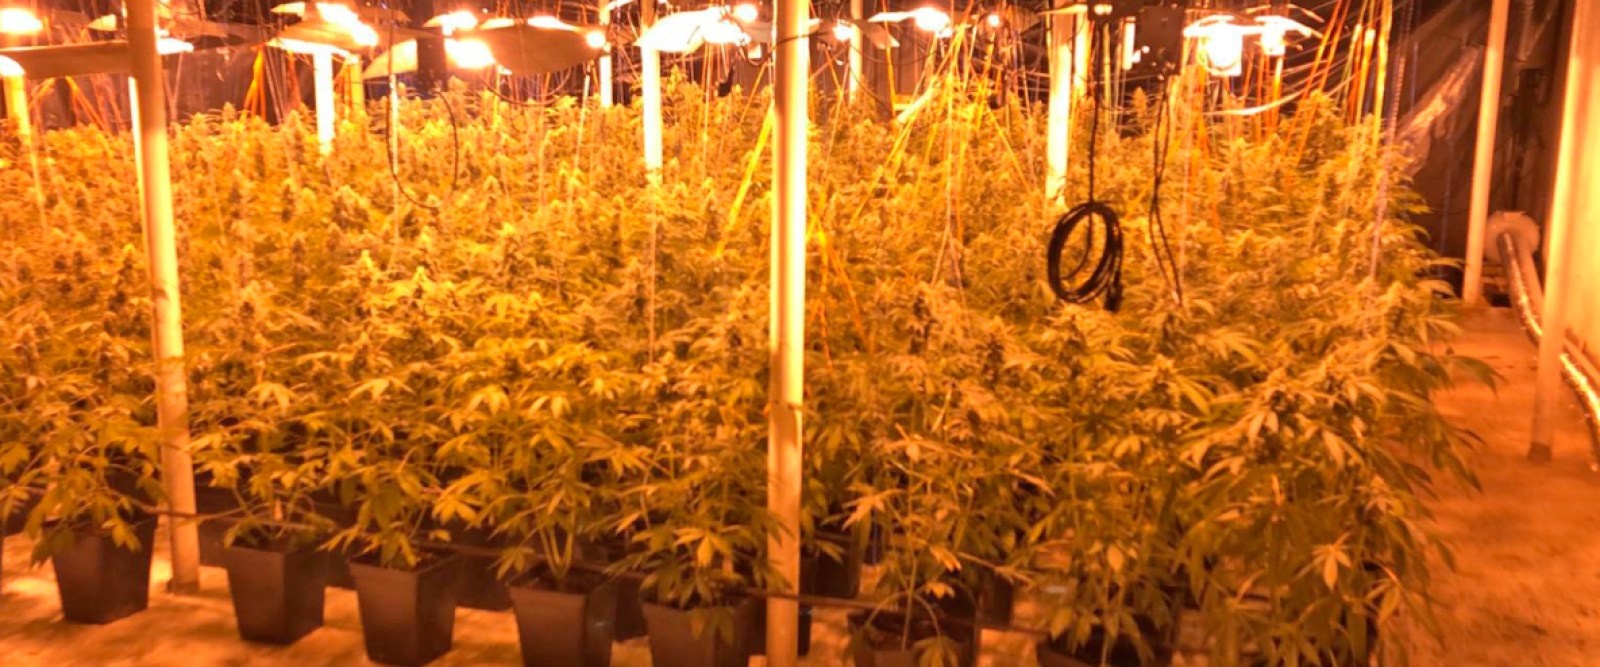 Descubren 5 mil plantas de marihuana en O'Higgins: 2 ciudadanos chinos detenidos